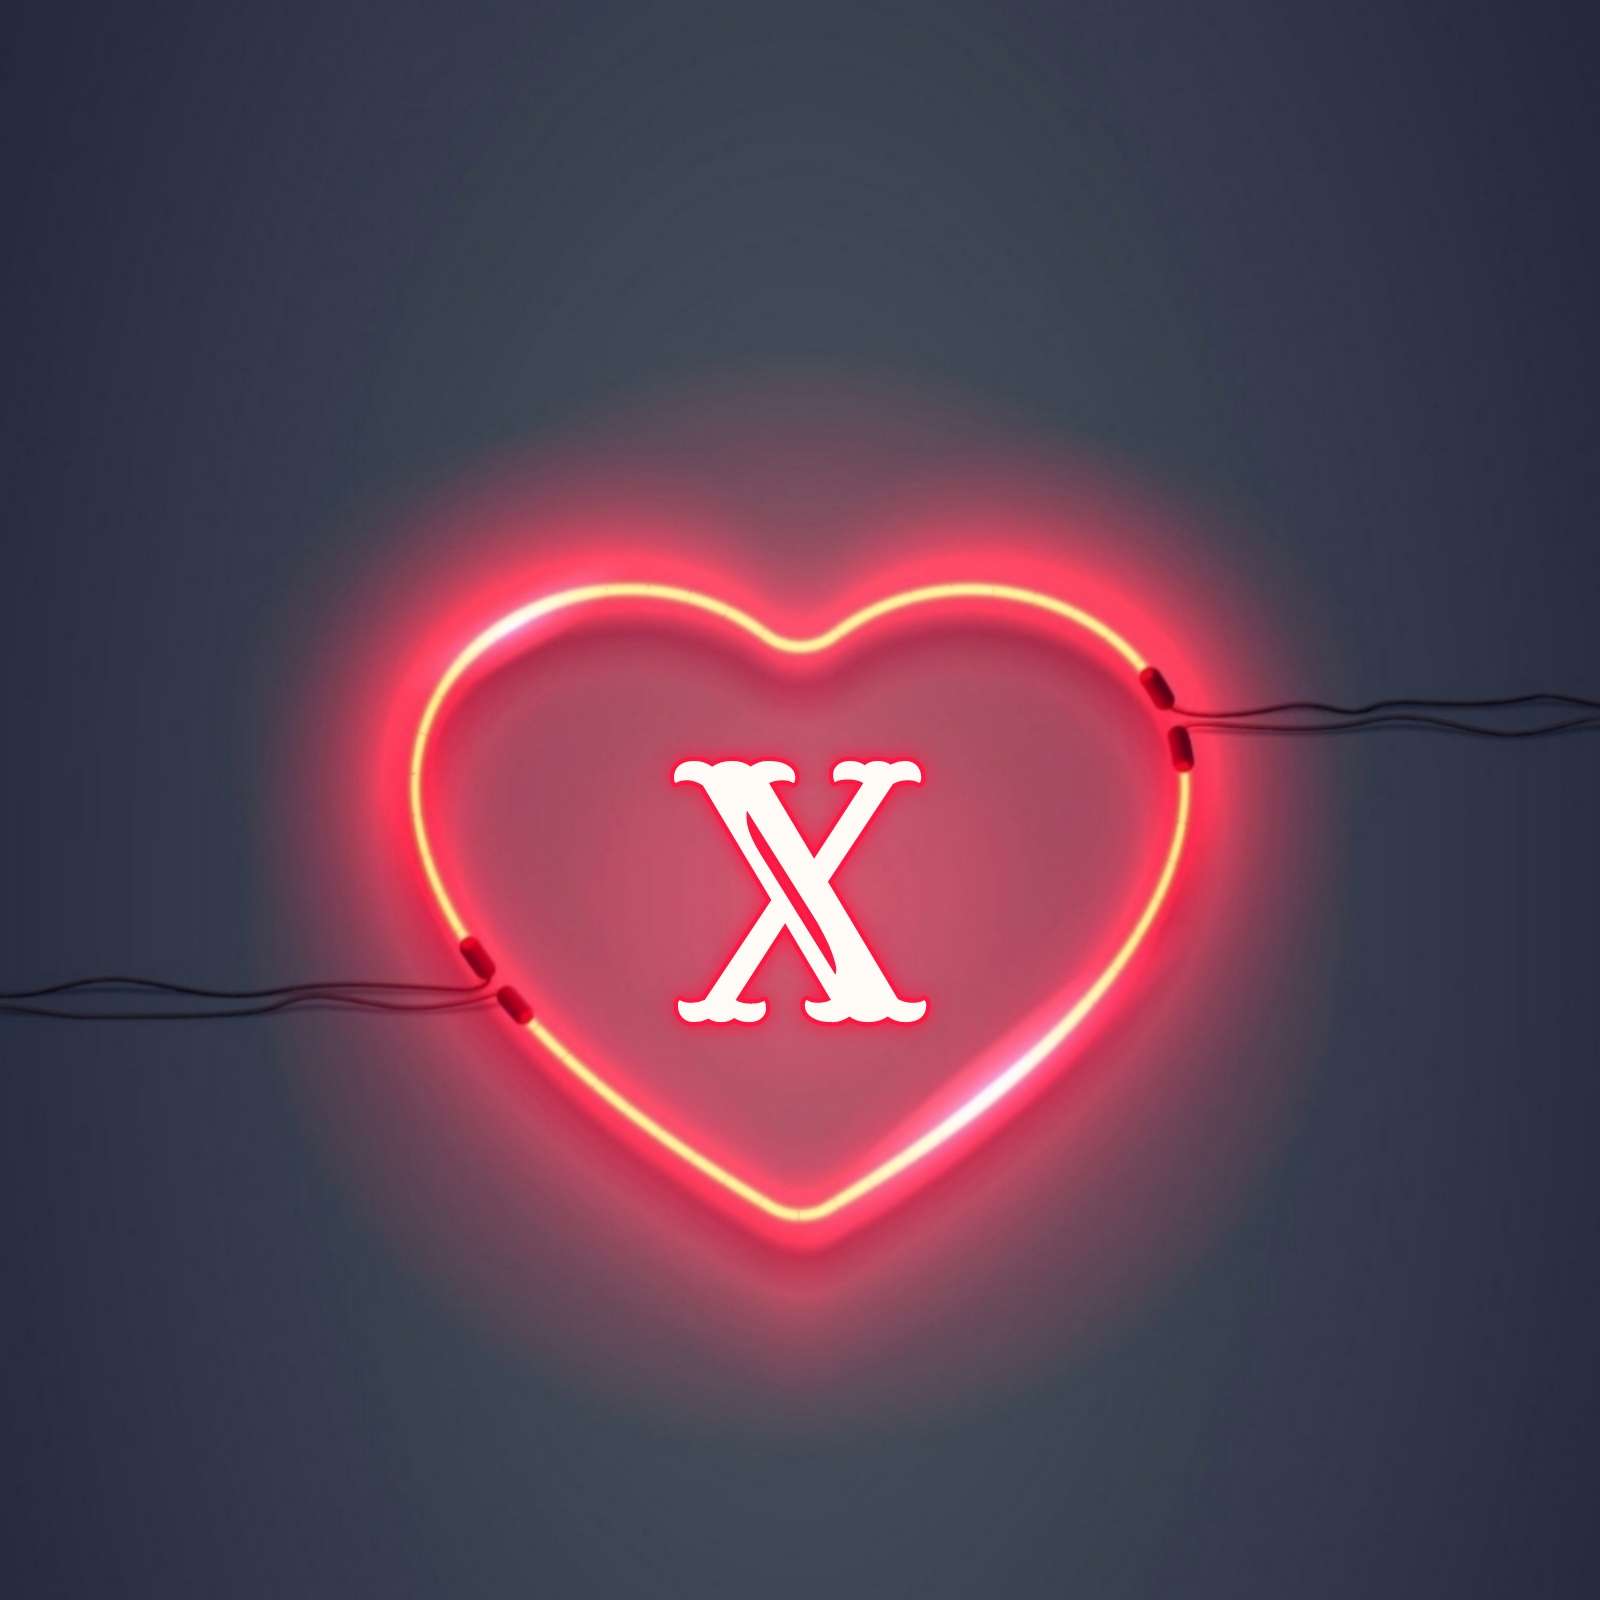 X Name Love DP Image Download